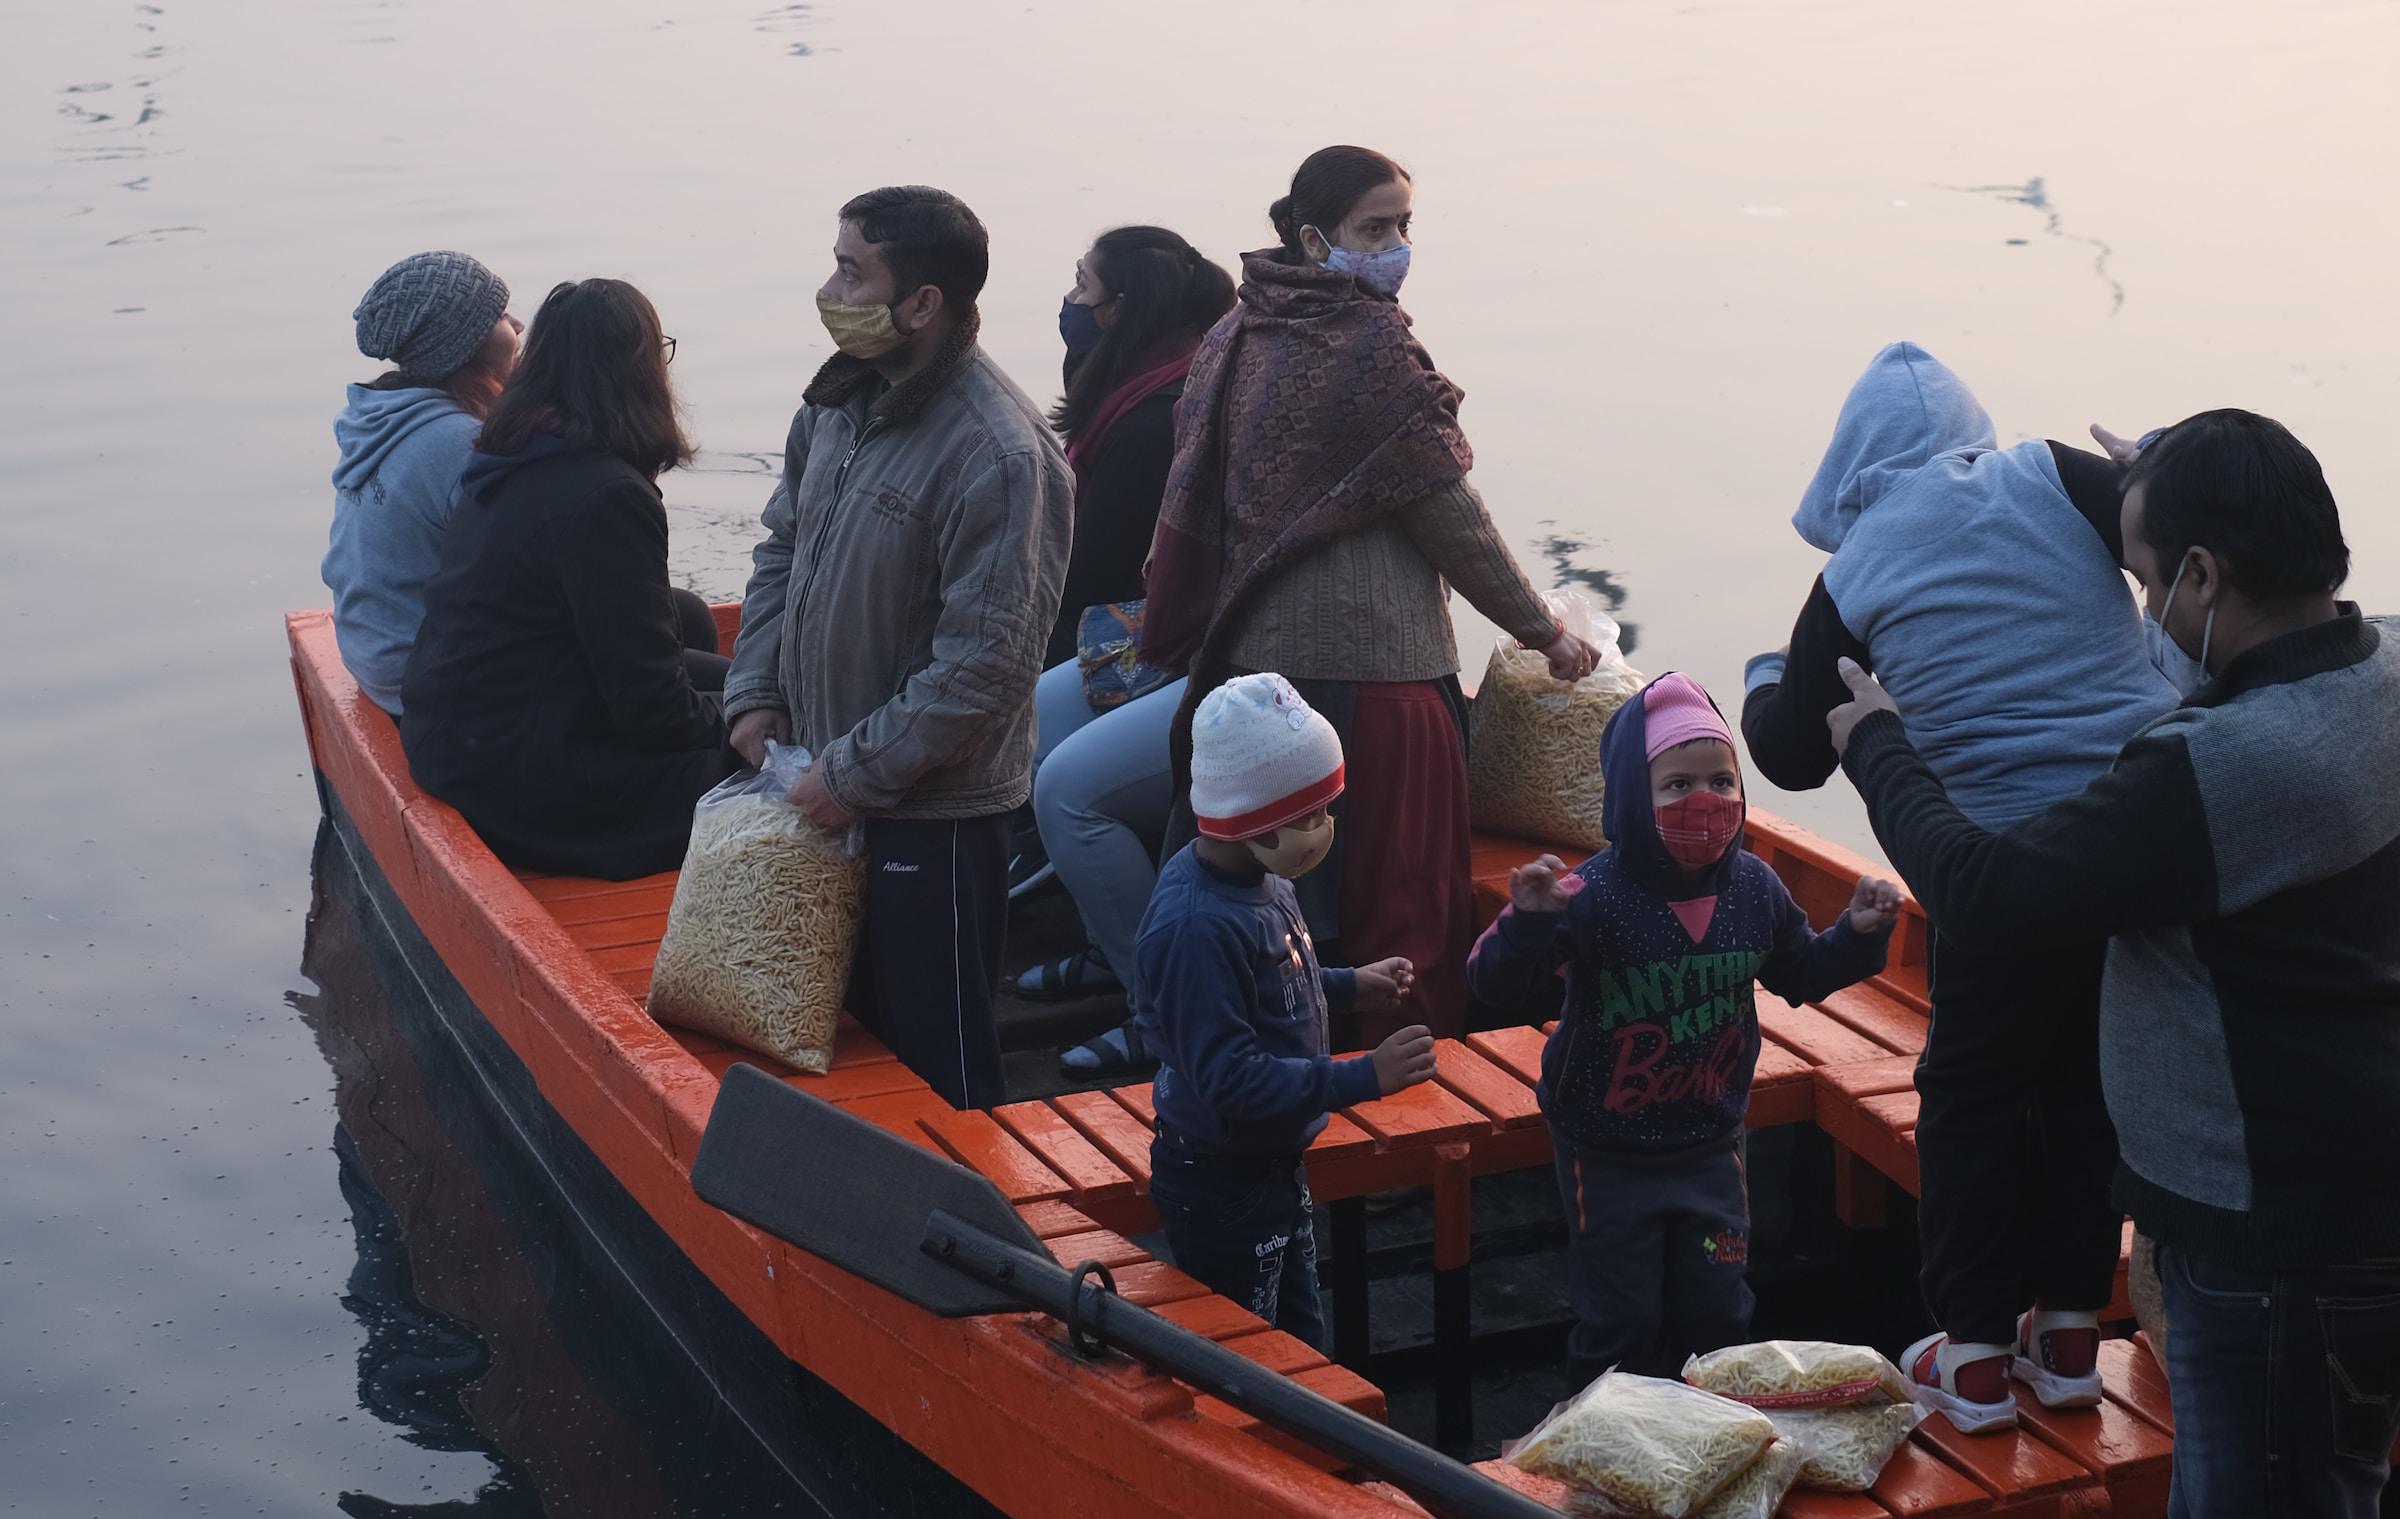 Migrants board a small boat